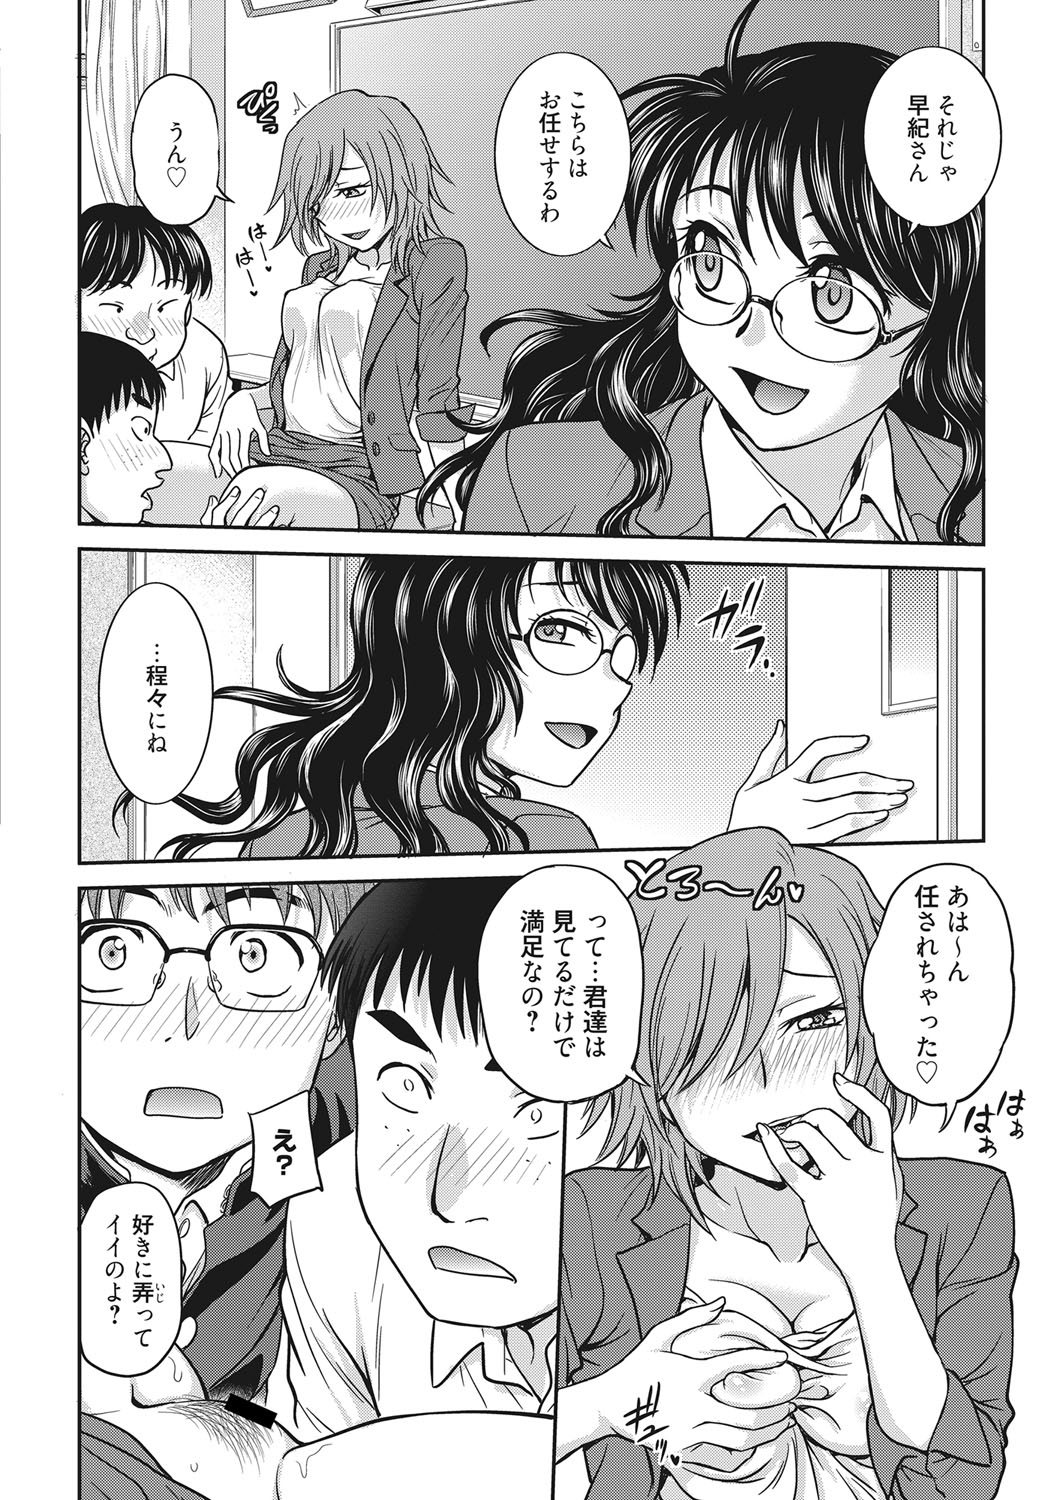 web 漫画ばんがいち Vol.22